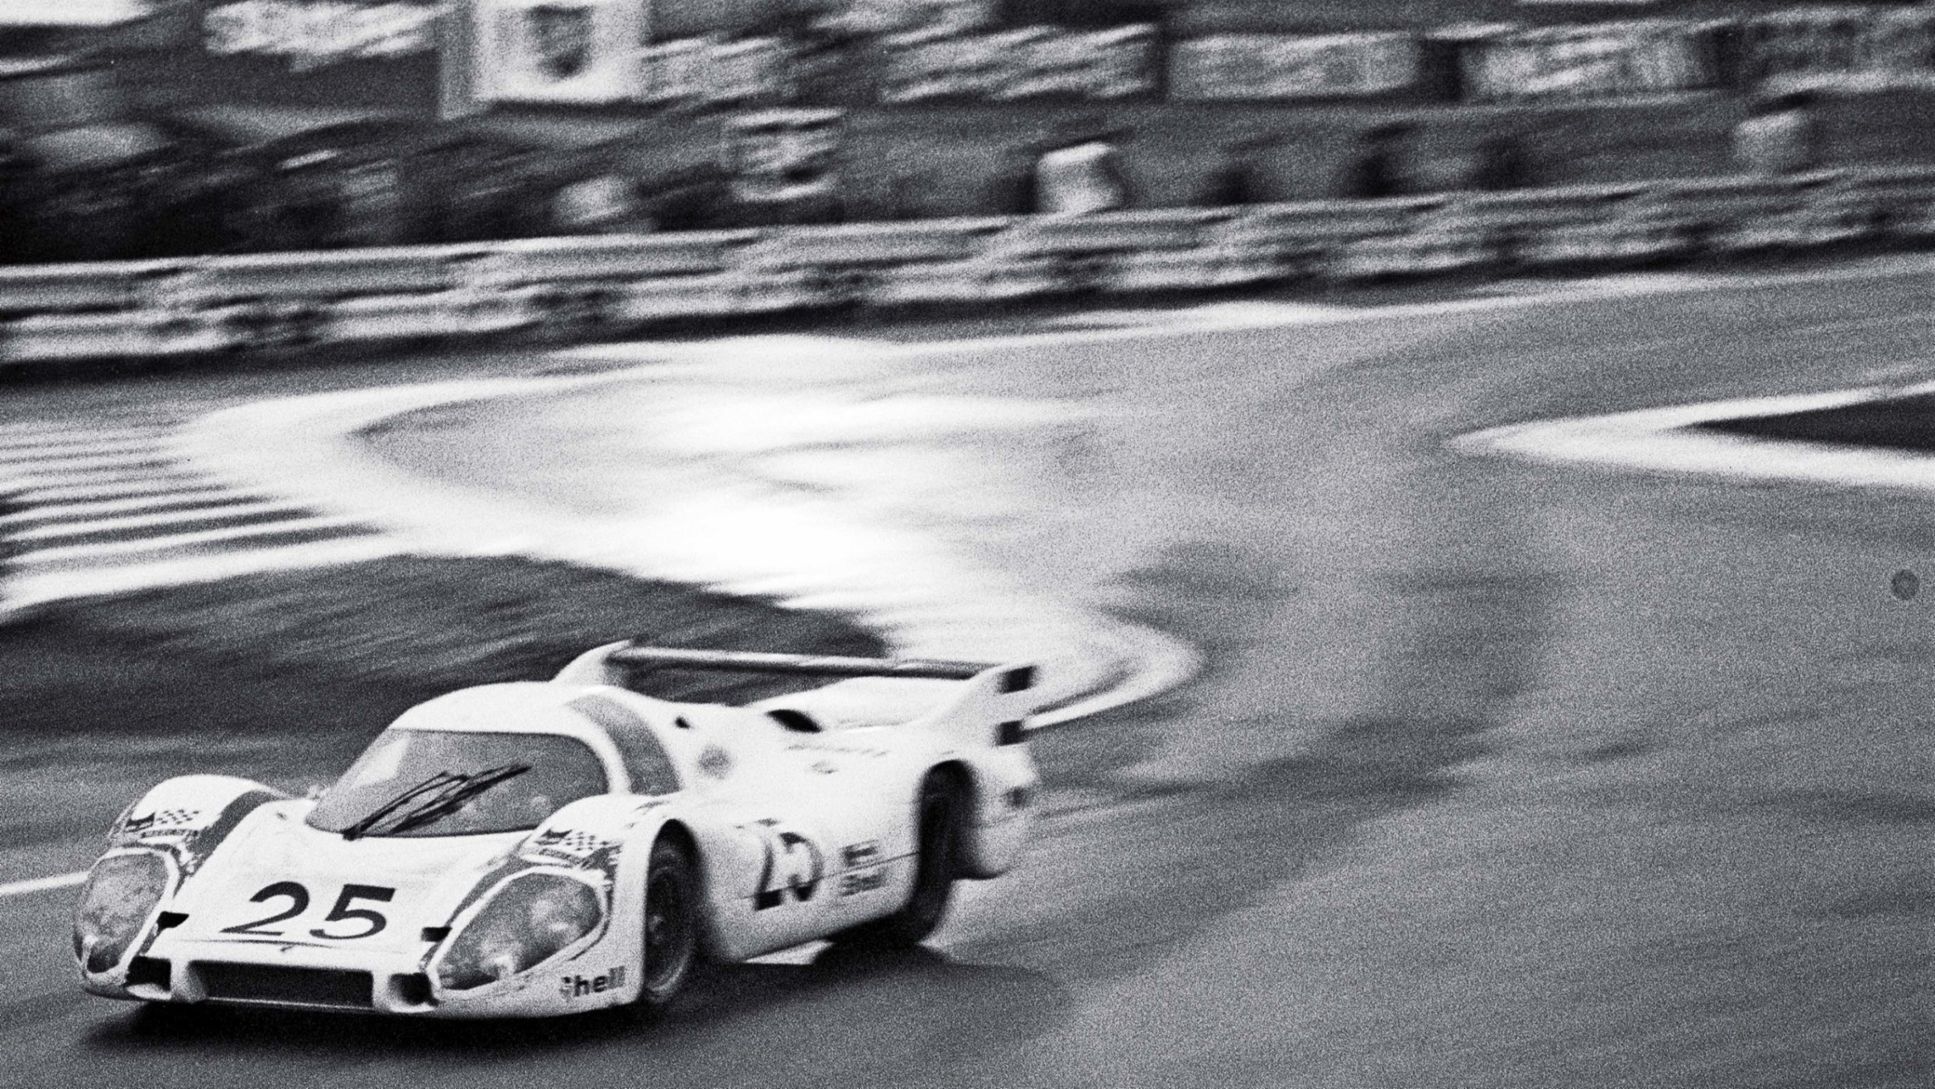 Porsche 917 Langheck, Le Mans, France, 1970, Porsche AG